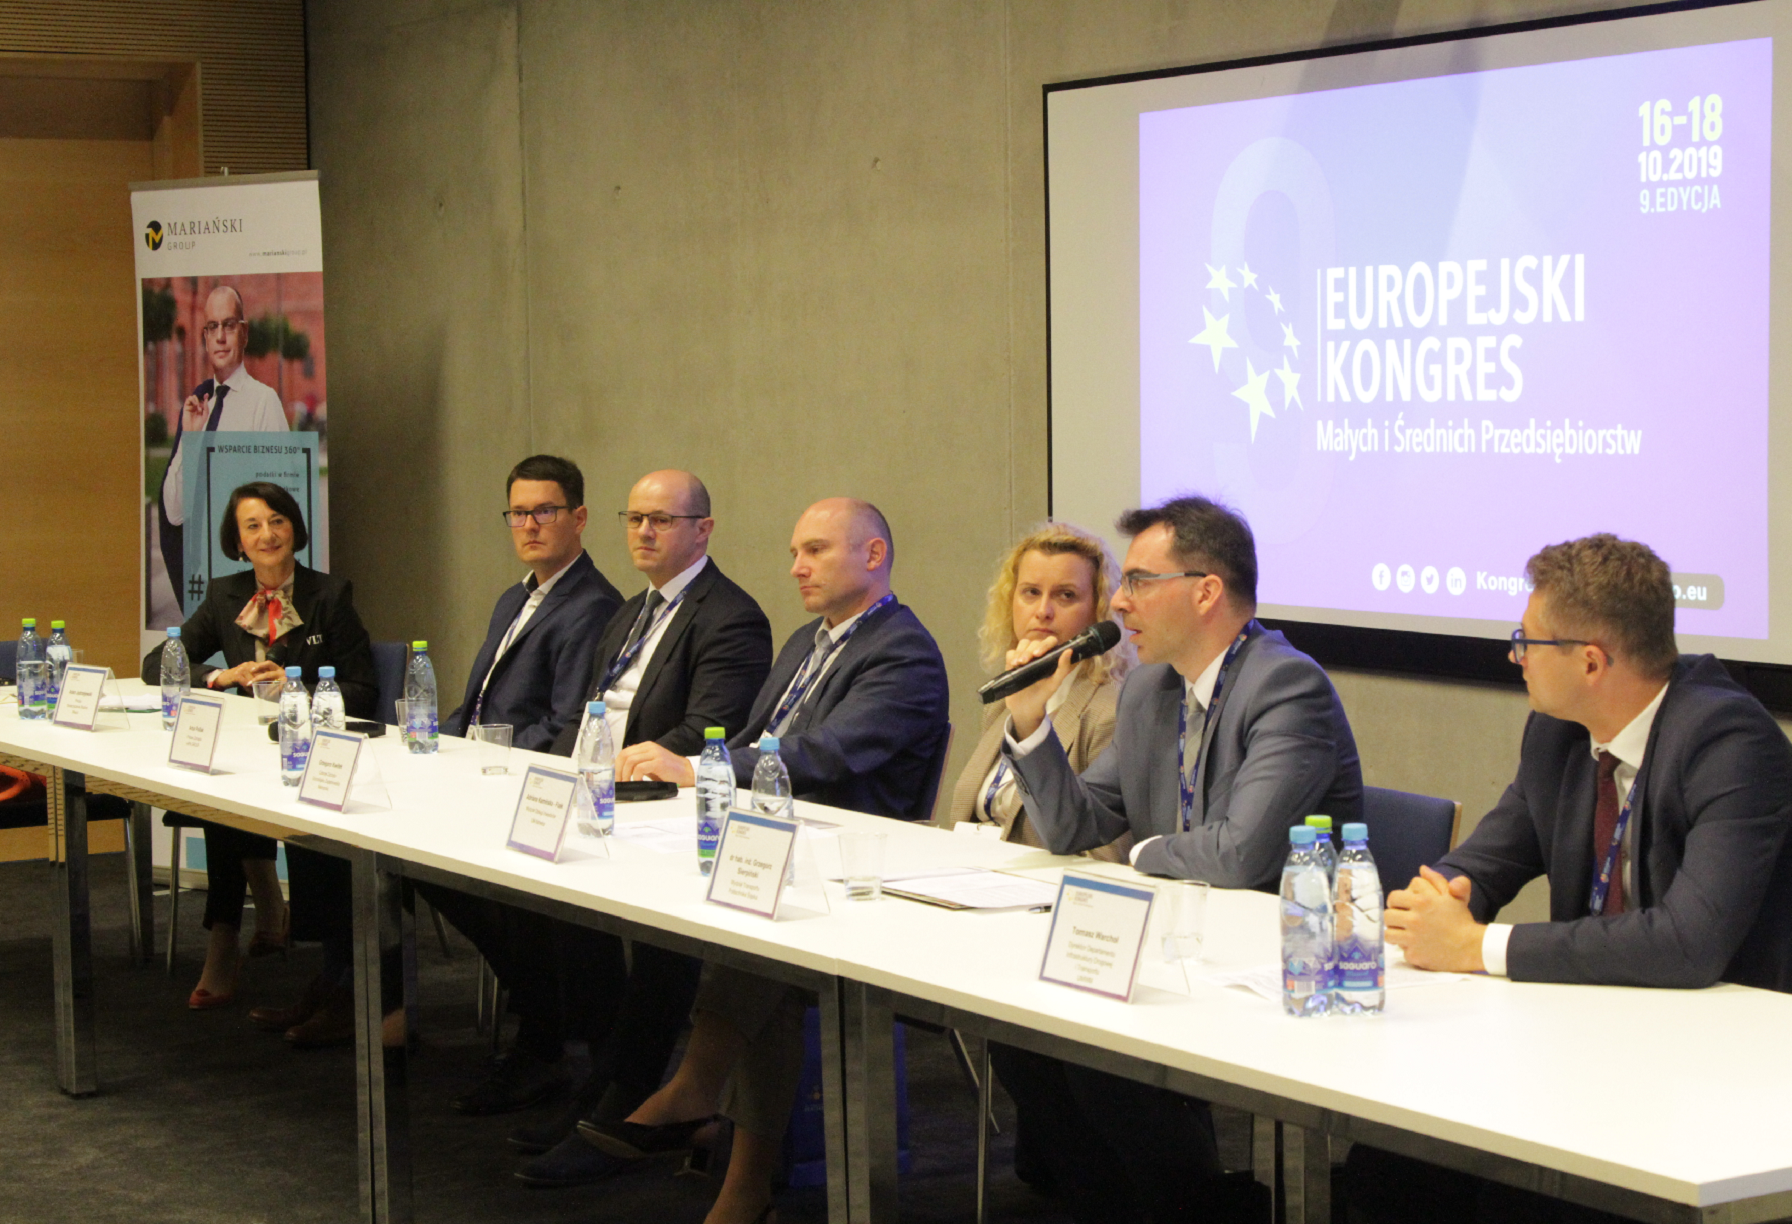 Художня робота статті Transport jednym z głównych tematów Europejskiego Kongresu MŚP w Katowicach